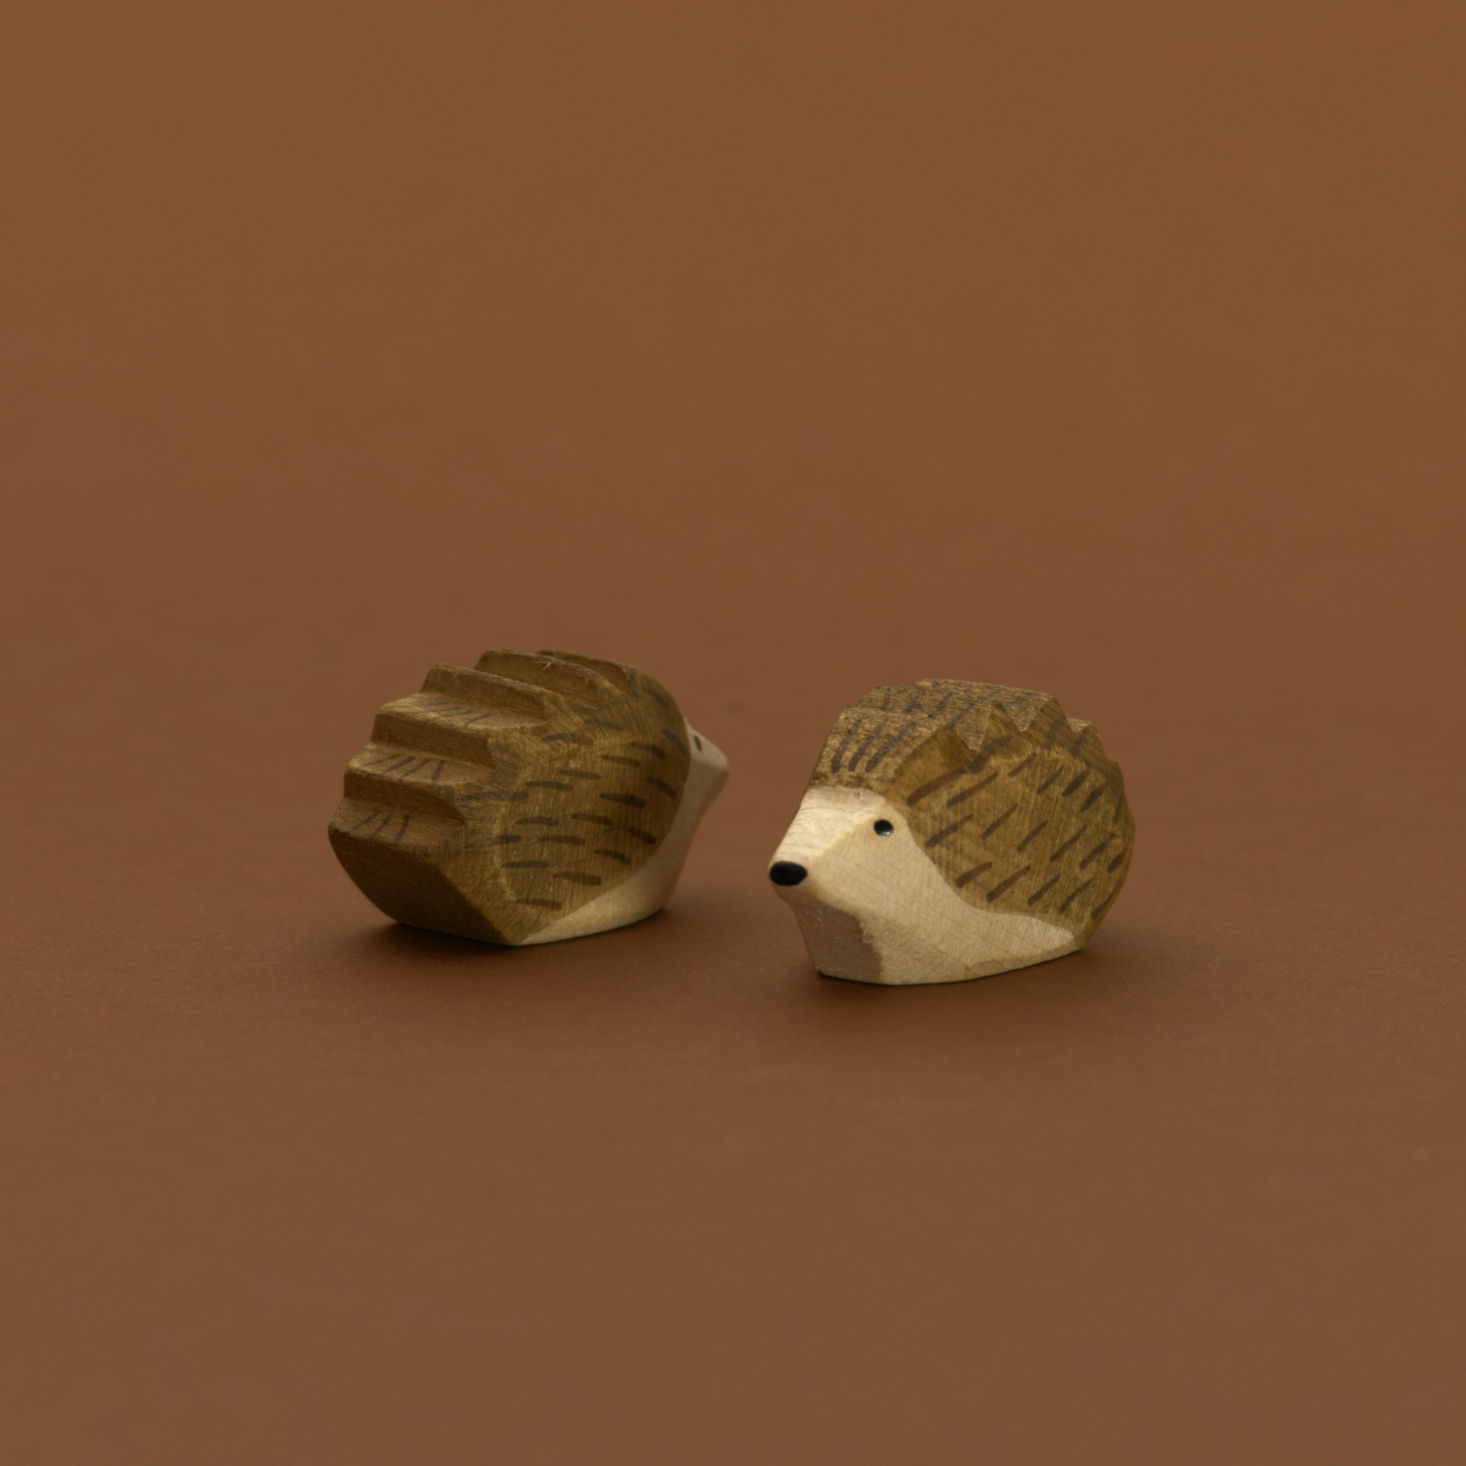 Zwei kleine Igel von Ostheimer aus Naturholz gefertigt, beide haben dunkelbraune Stacheln und naturfarbenes Bauchfell. Der Rechte schaut nach vorne links und der Linke nach hinten rechts.